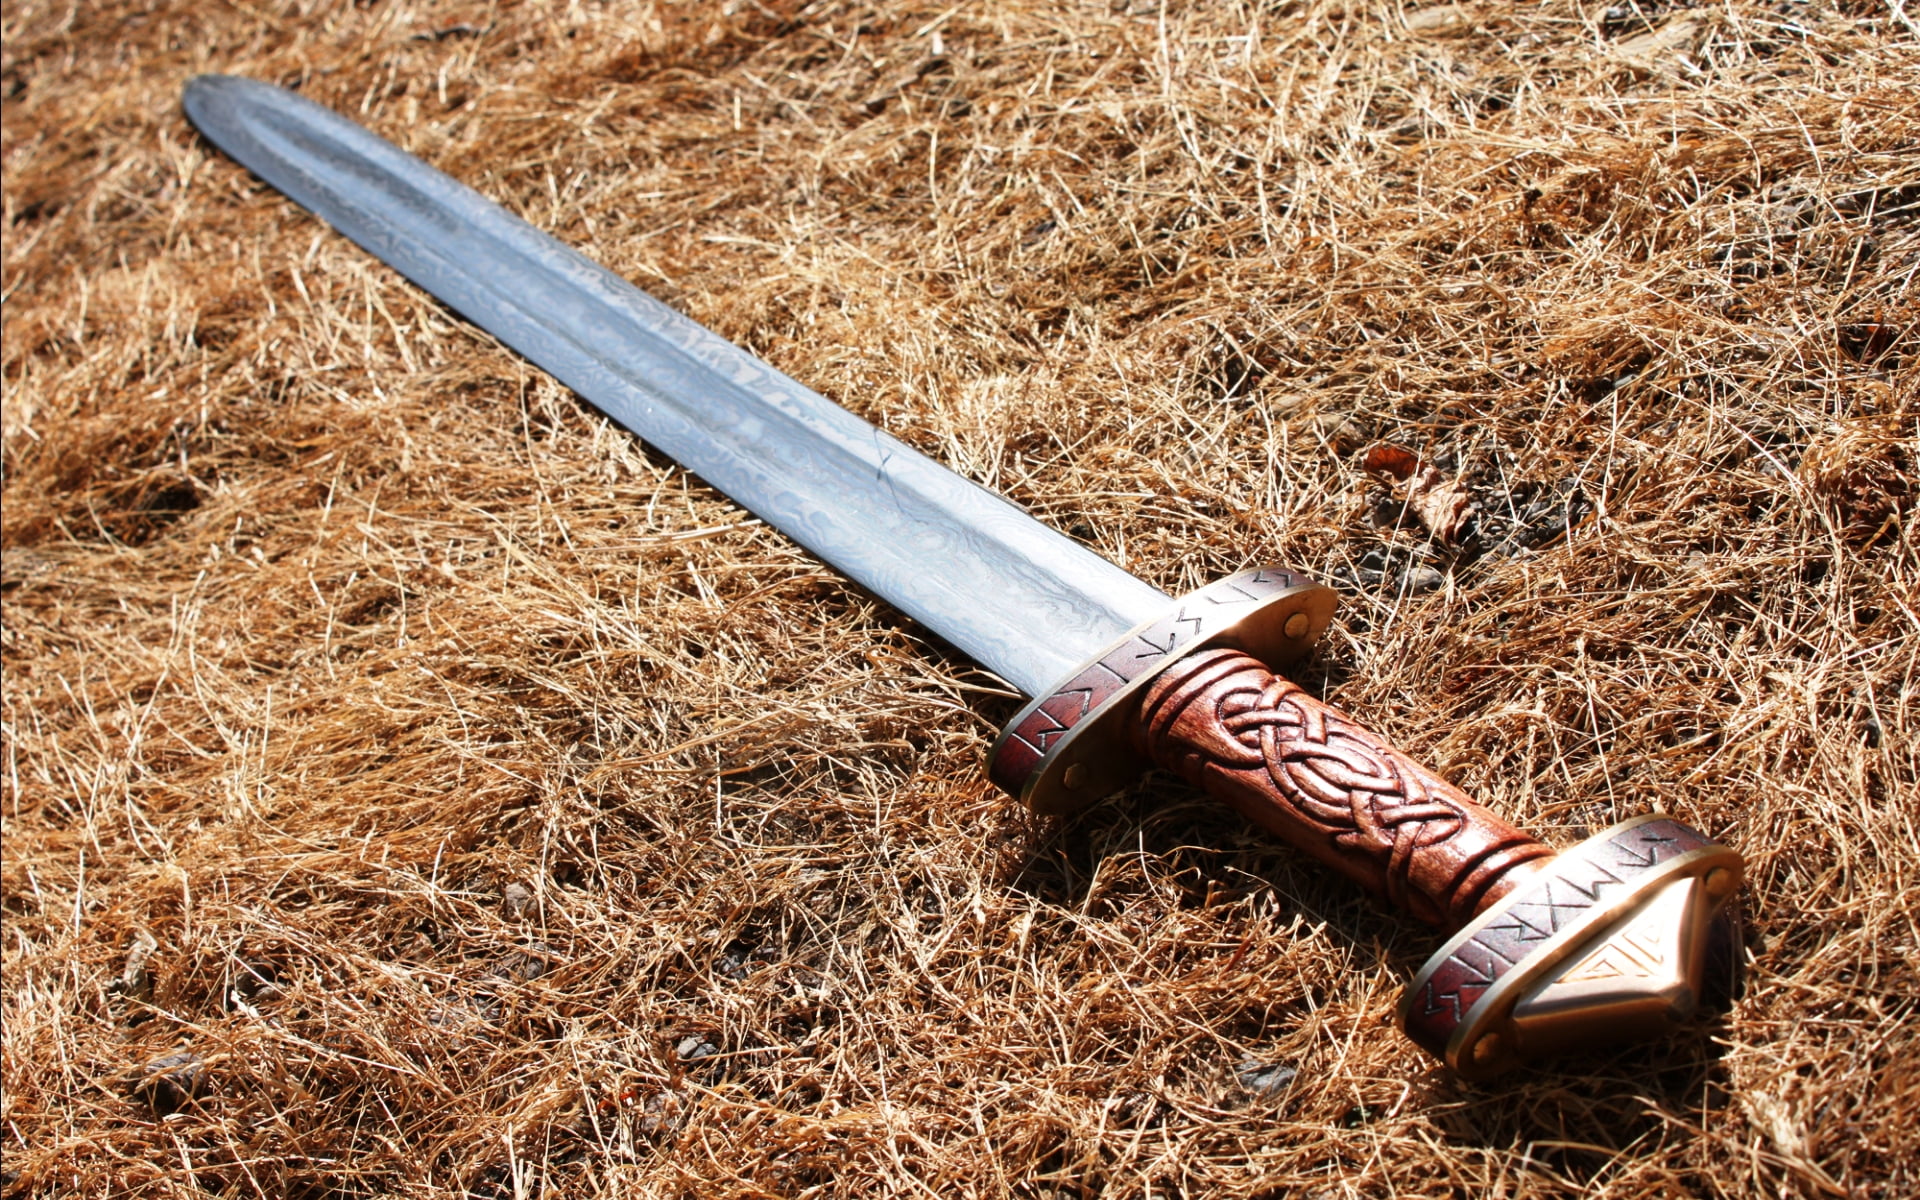 Migration Period Sword, silver sword, War & Army, sward, land